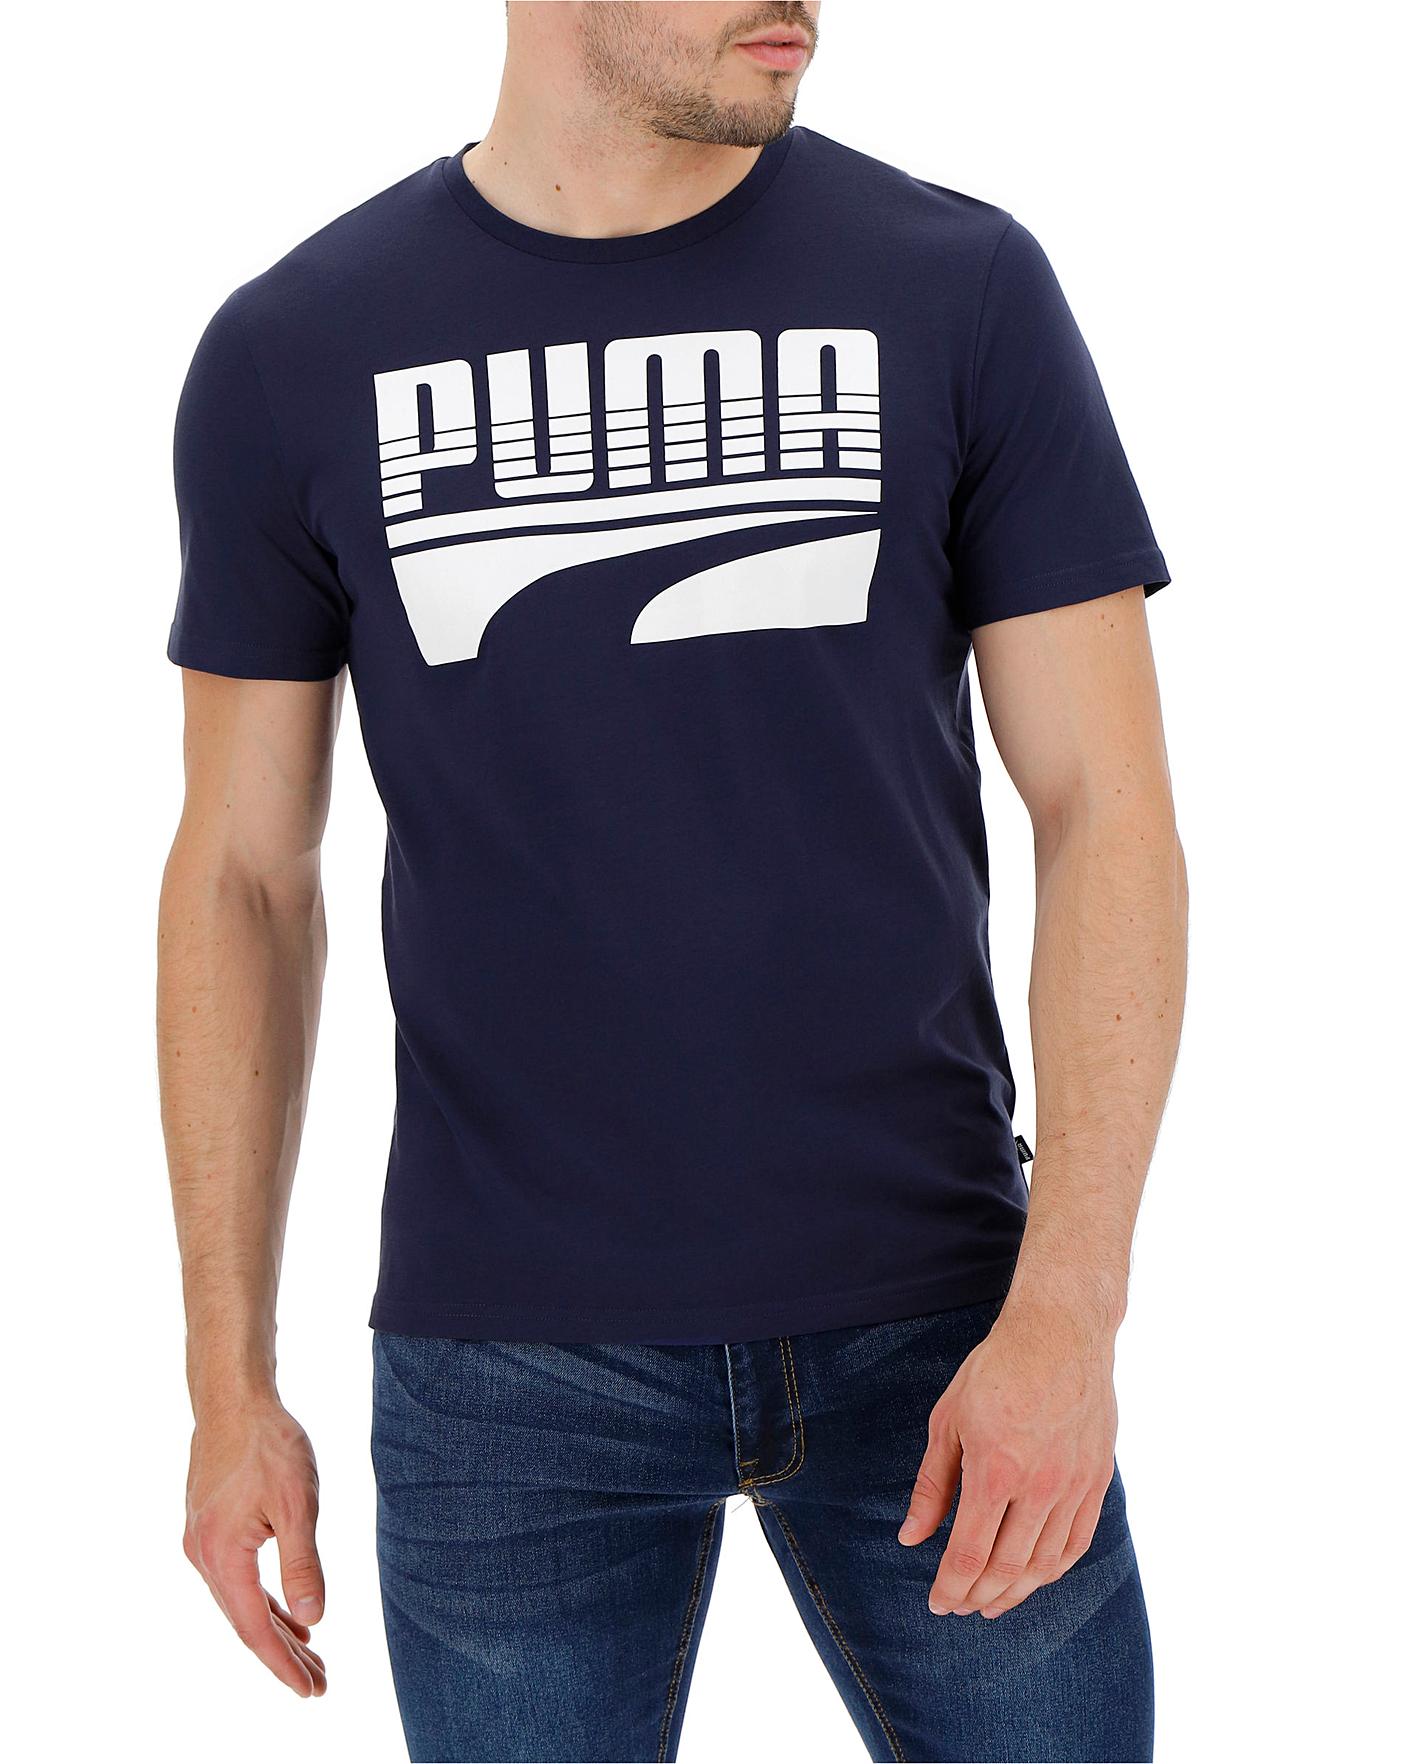 puma rebel t shirt